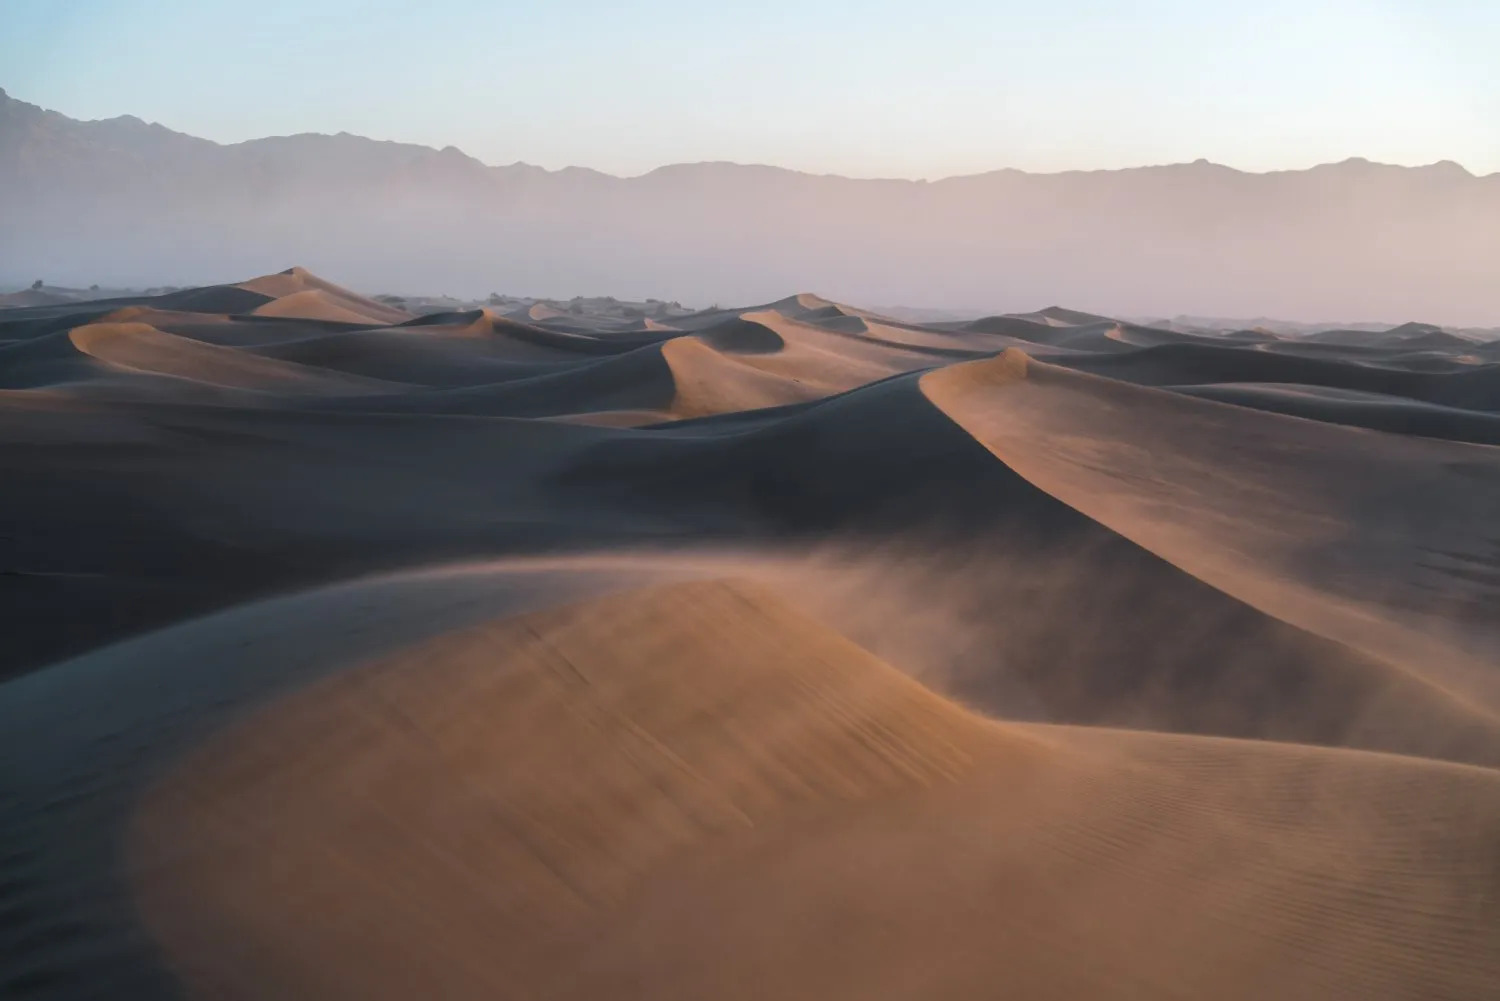 dunes de sable avec composition de paysage selon la règle des tiers